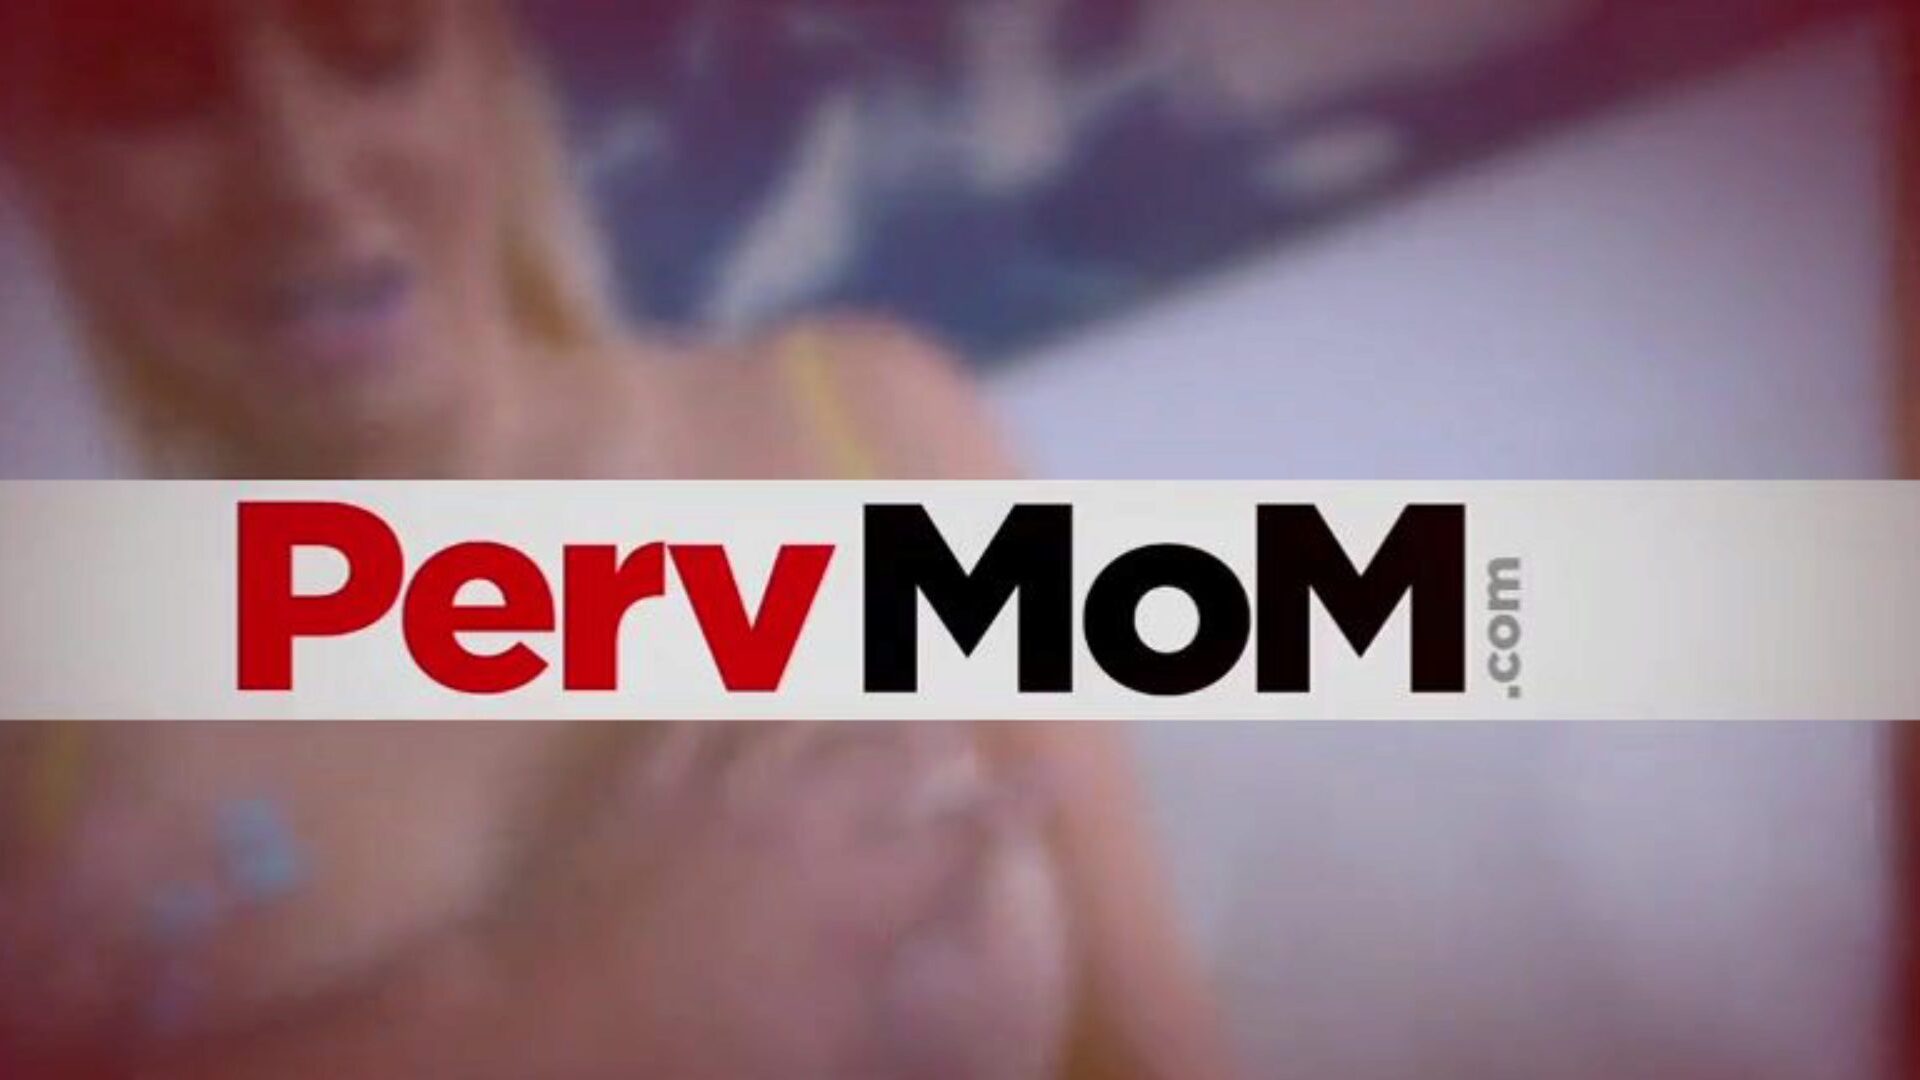 pervmom - متحمس جنسيا زوجة الأب كريسي لين يرغب في أن يمارس الجنس مرة أخرى